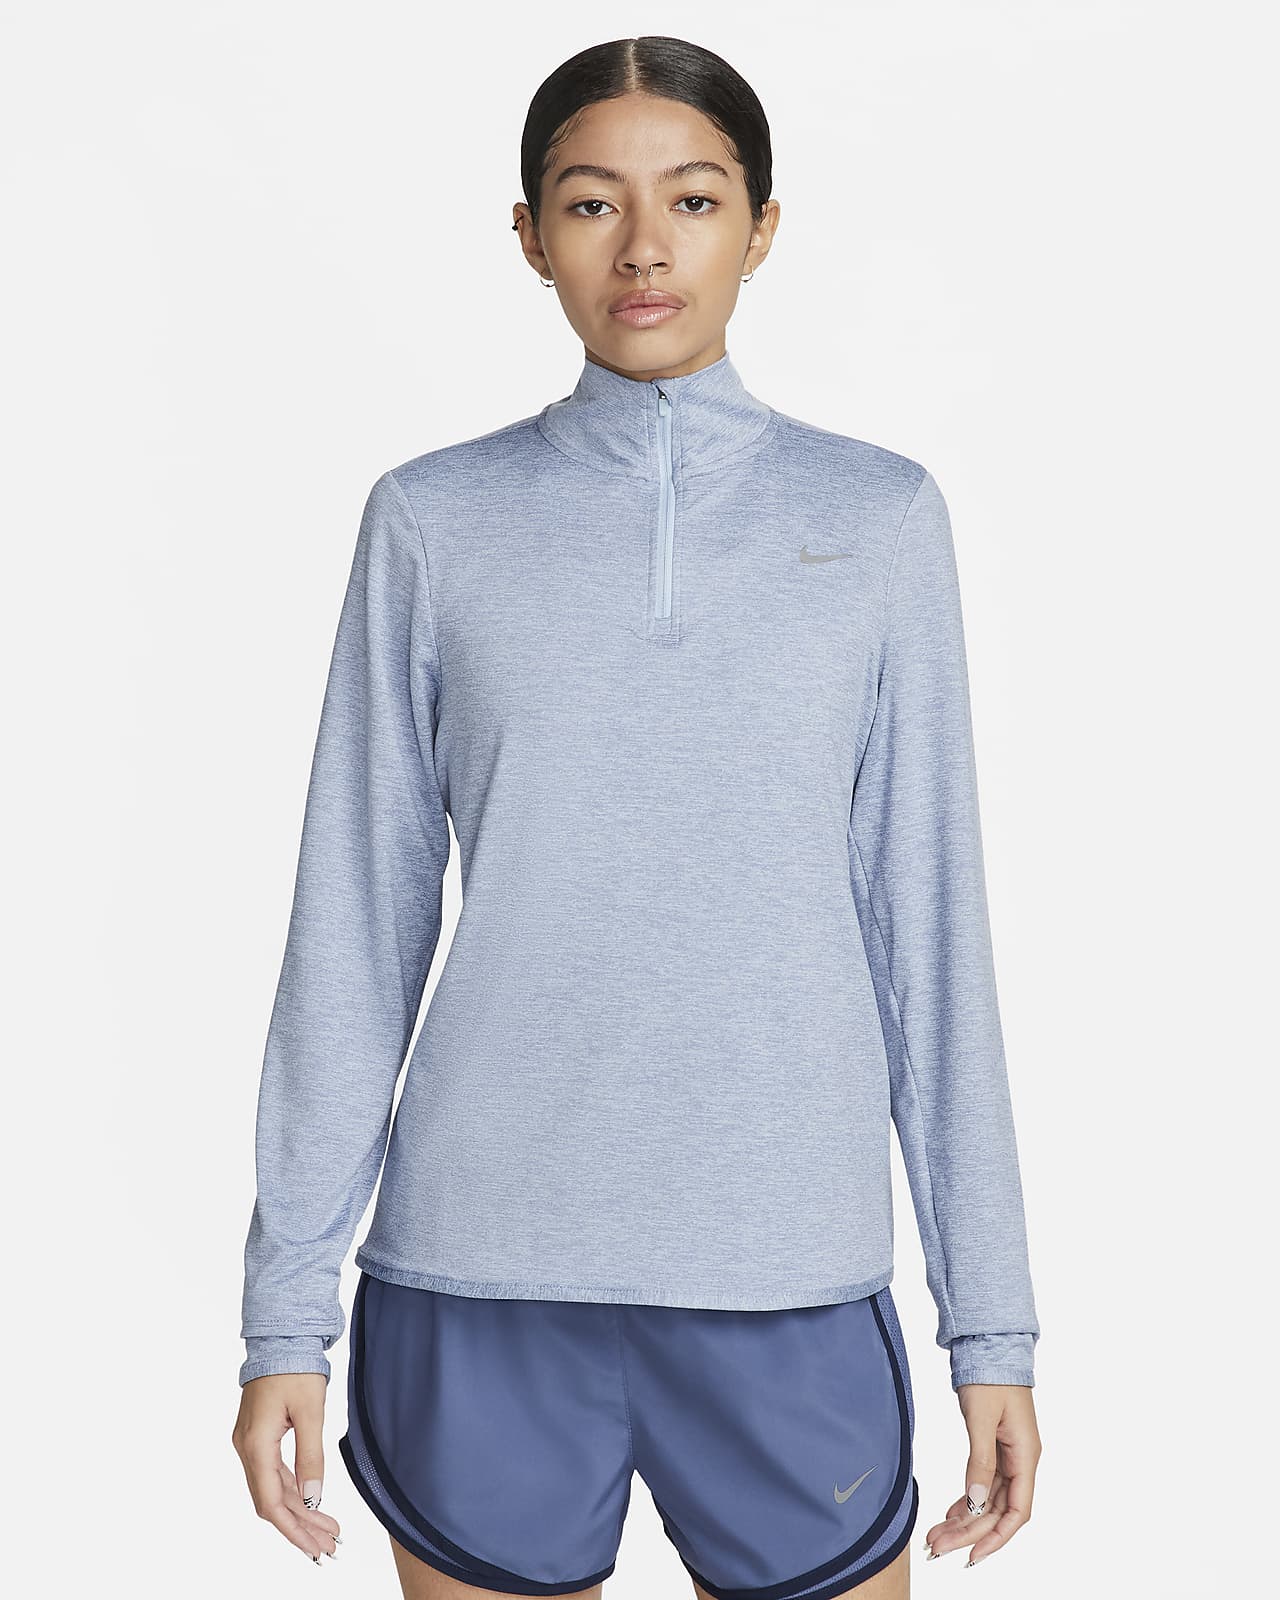 Nike Swift Parte de arriba con cremallera de 1/4 de running y protección frente a UV - Mujer